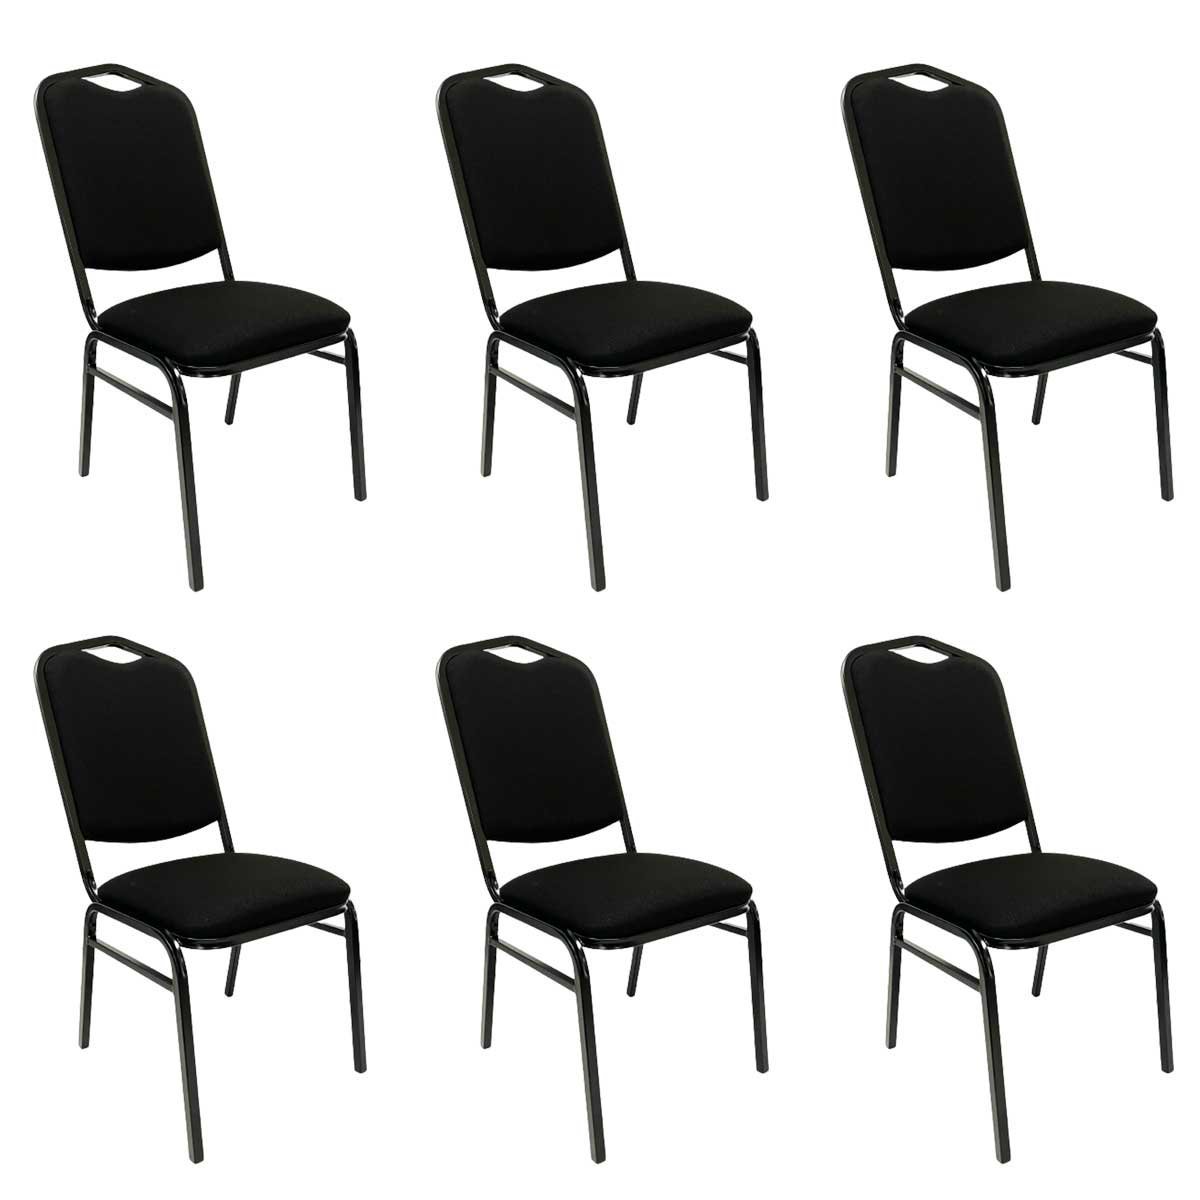 Kit 6 Cadeiras para Hotel Auditório Igreja Restaurante Eventos com Reforço Empilhável cor Preta Polt - 1